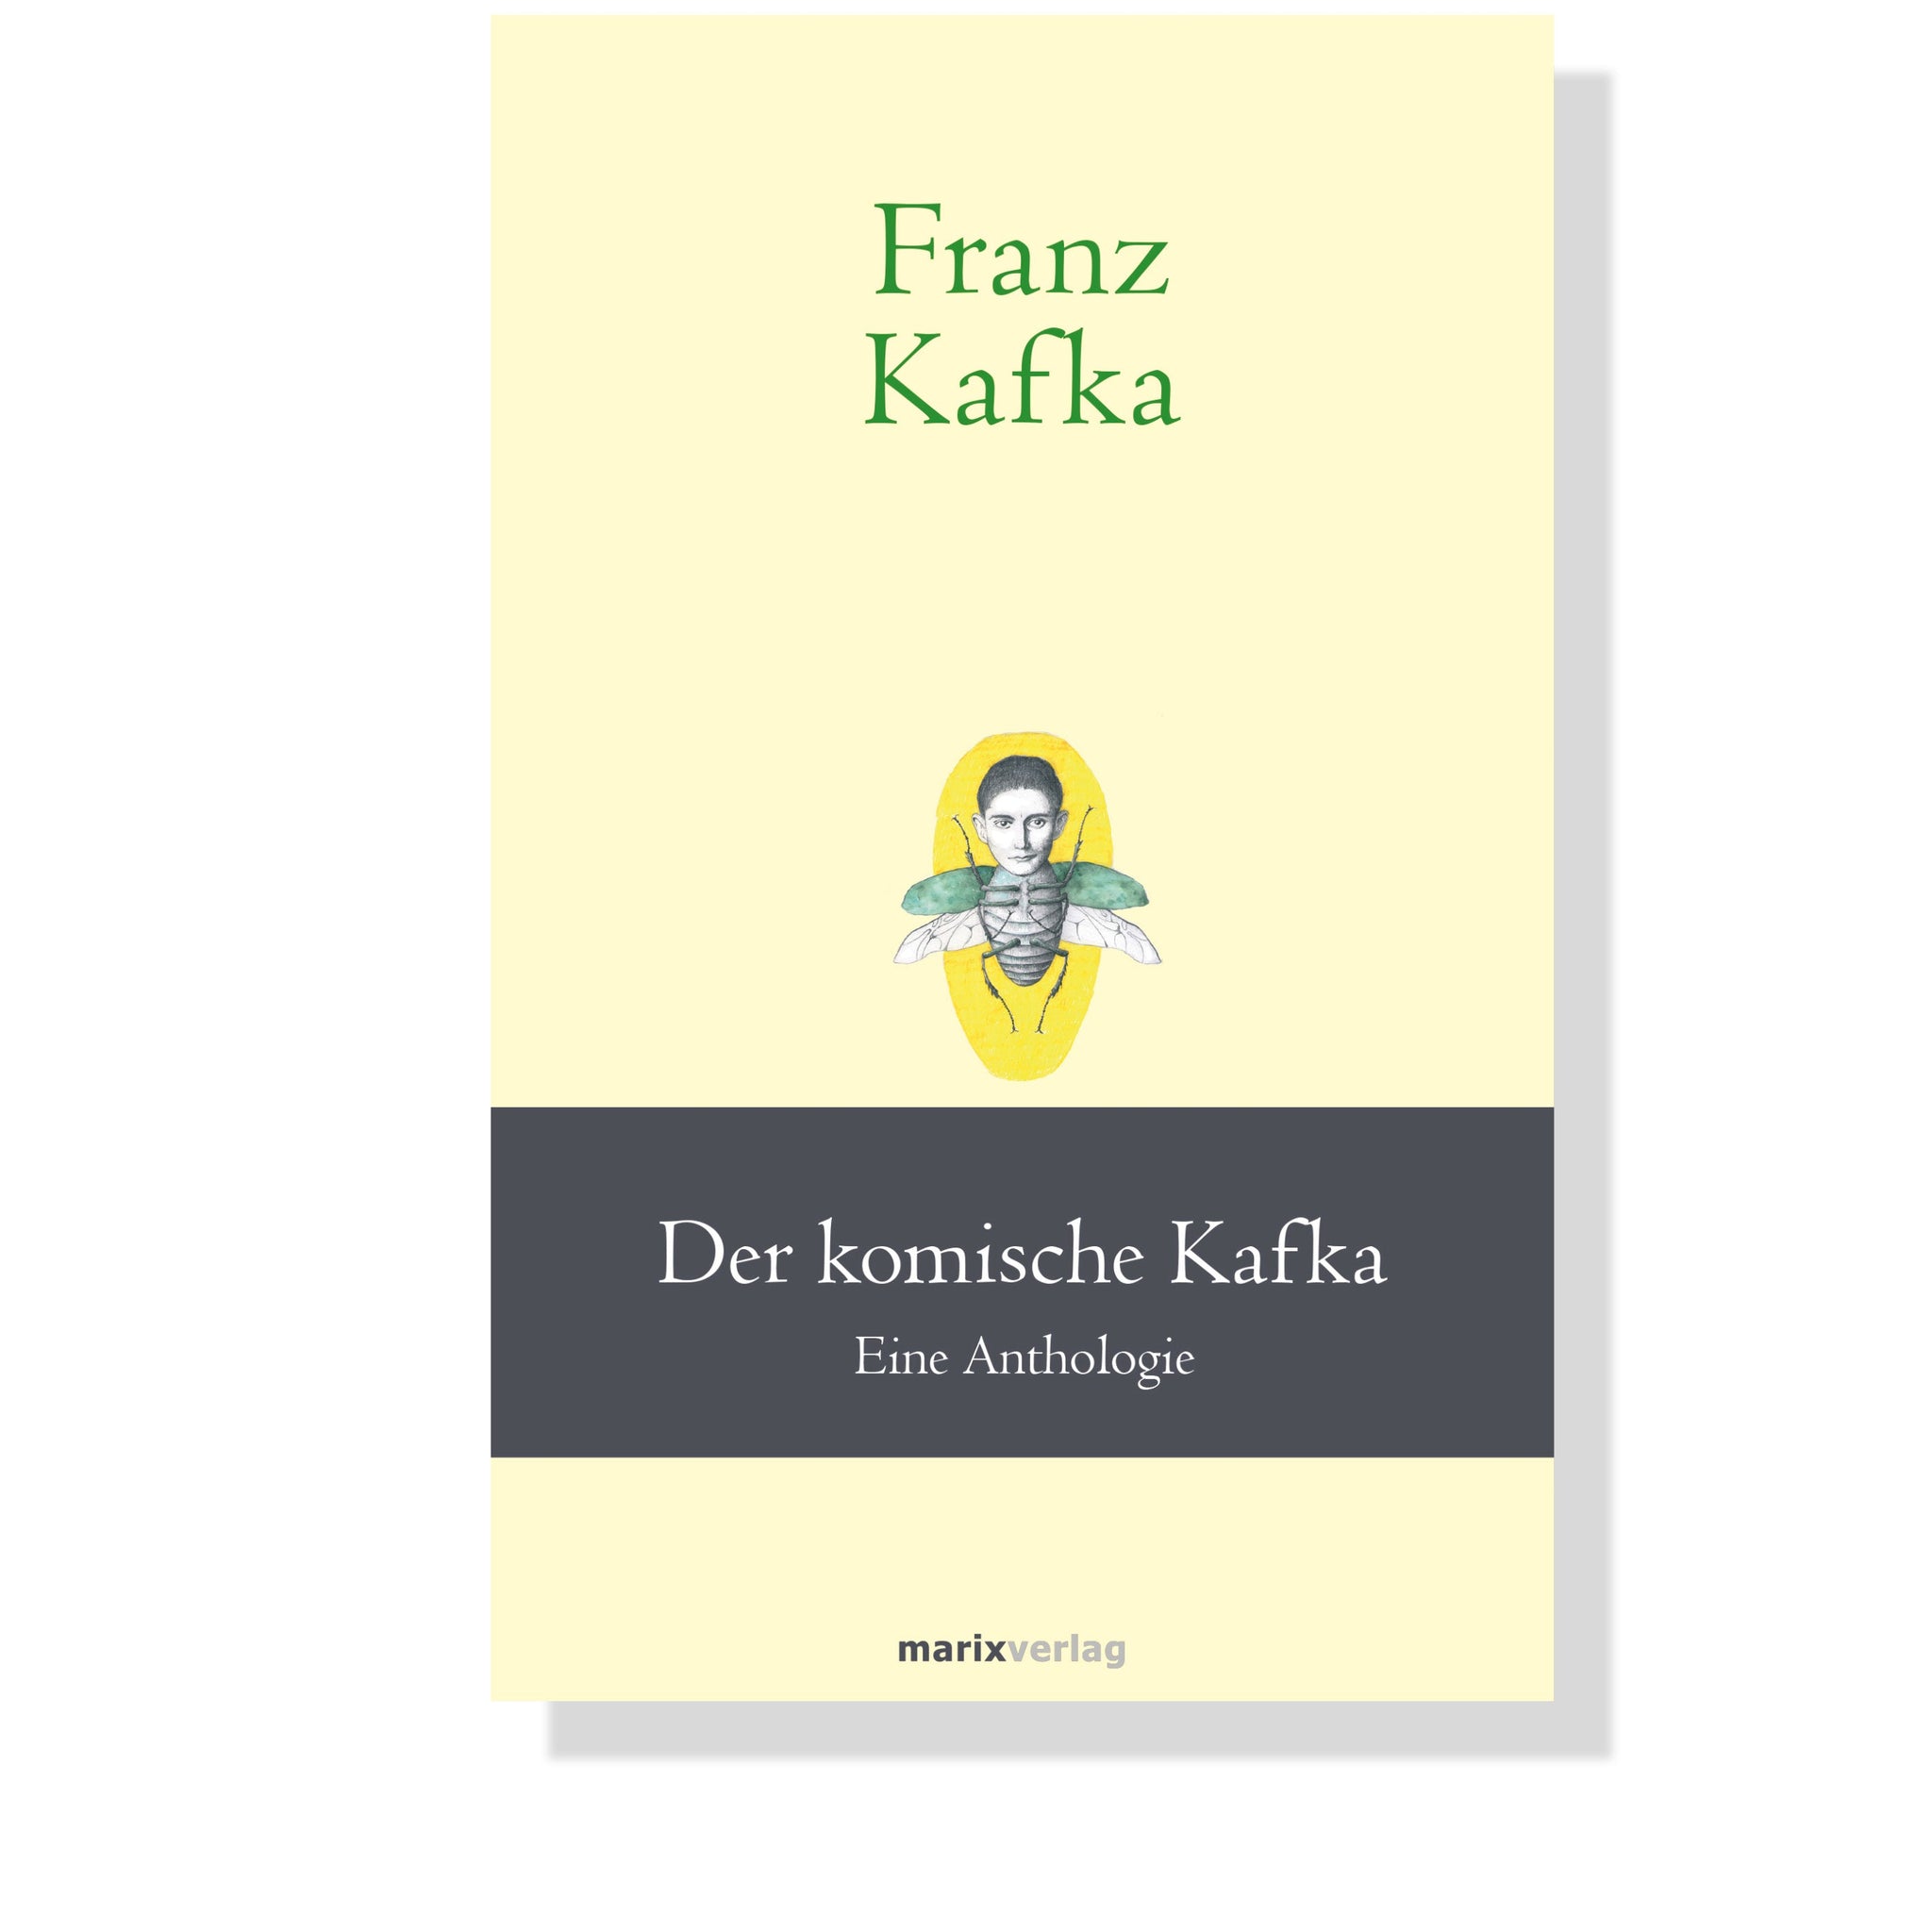 Der komische Kafka